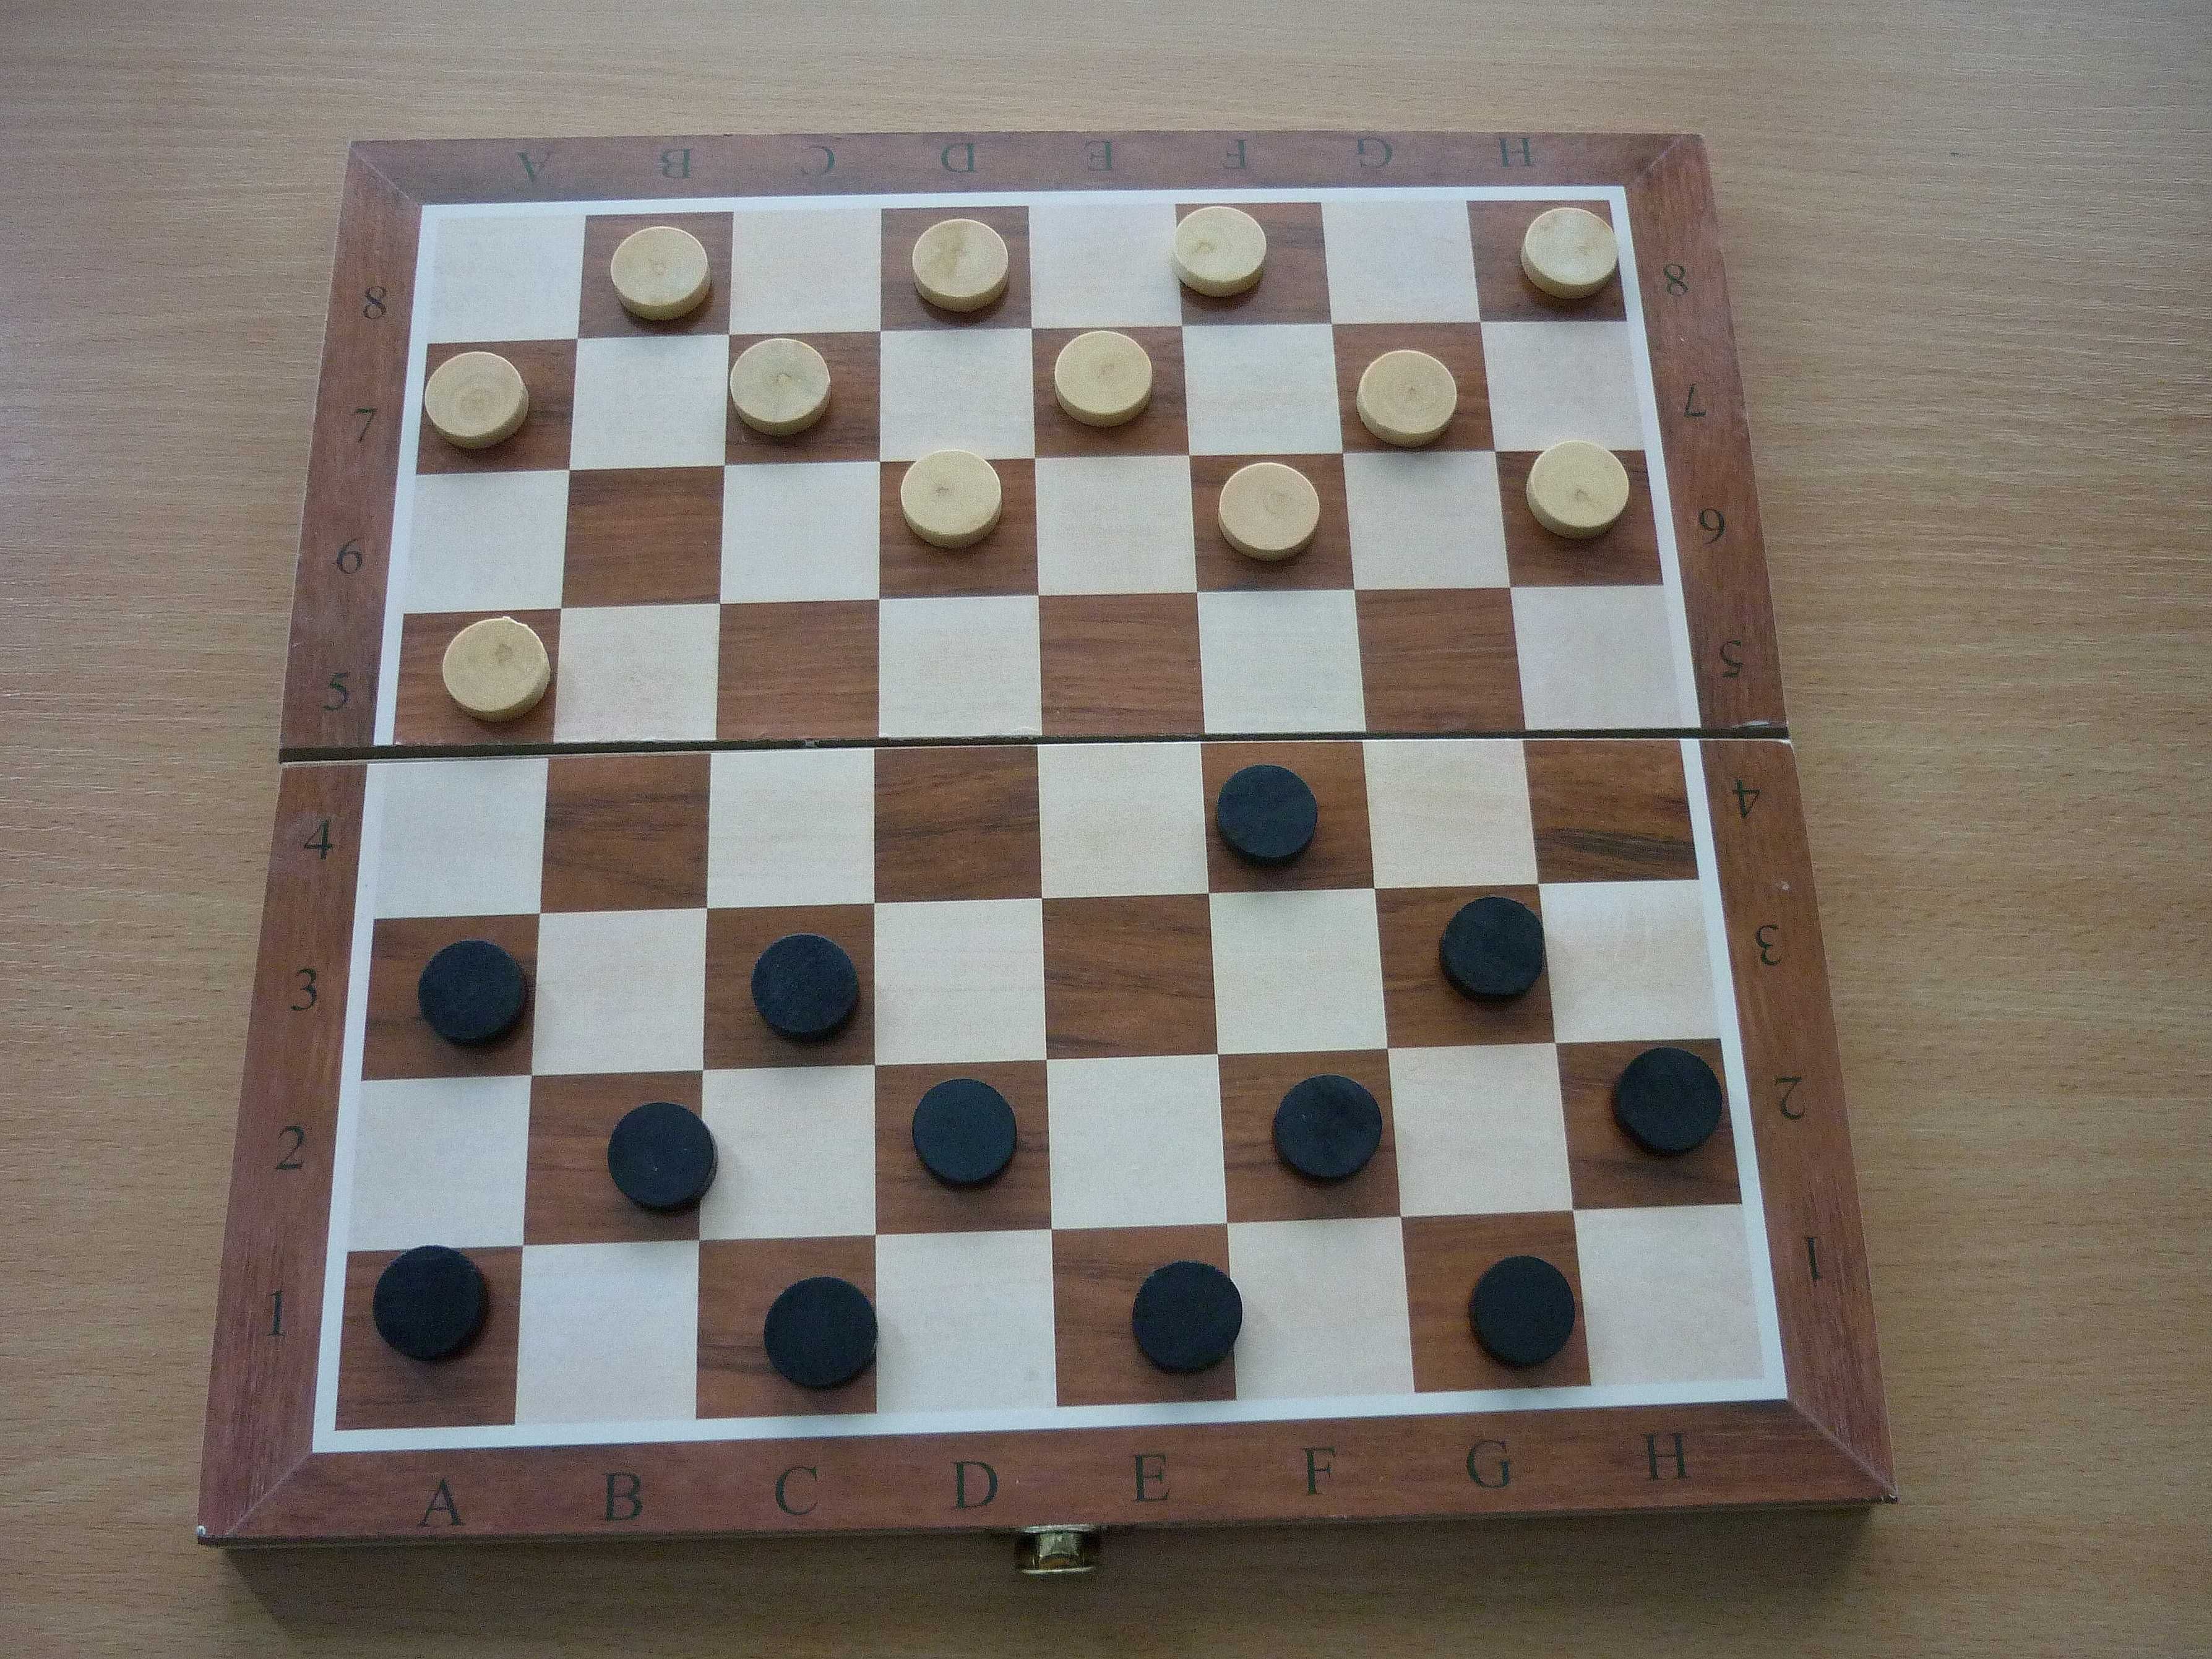 нарди шахи, шахматы шашки нарды, размер 35*35 см